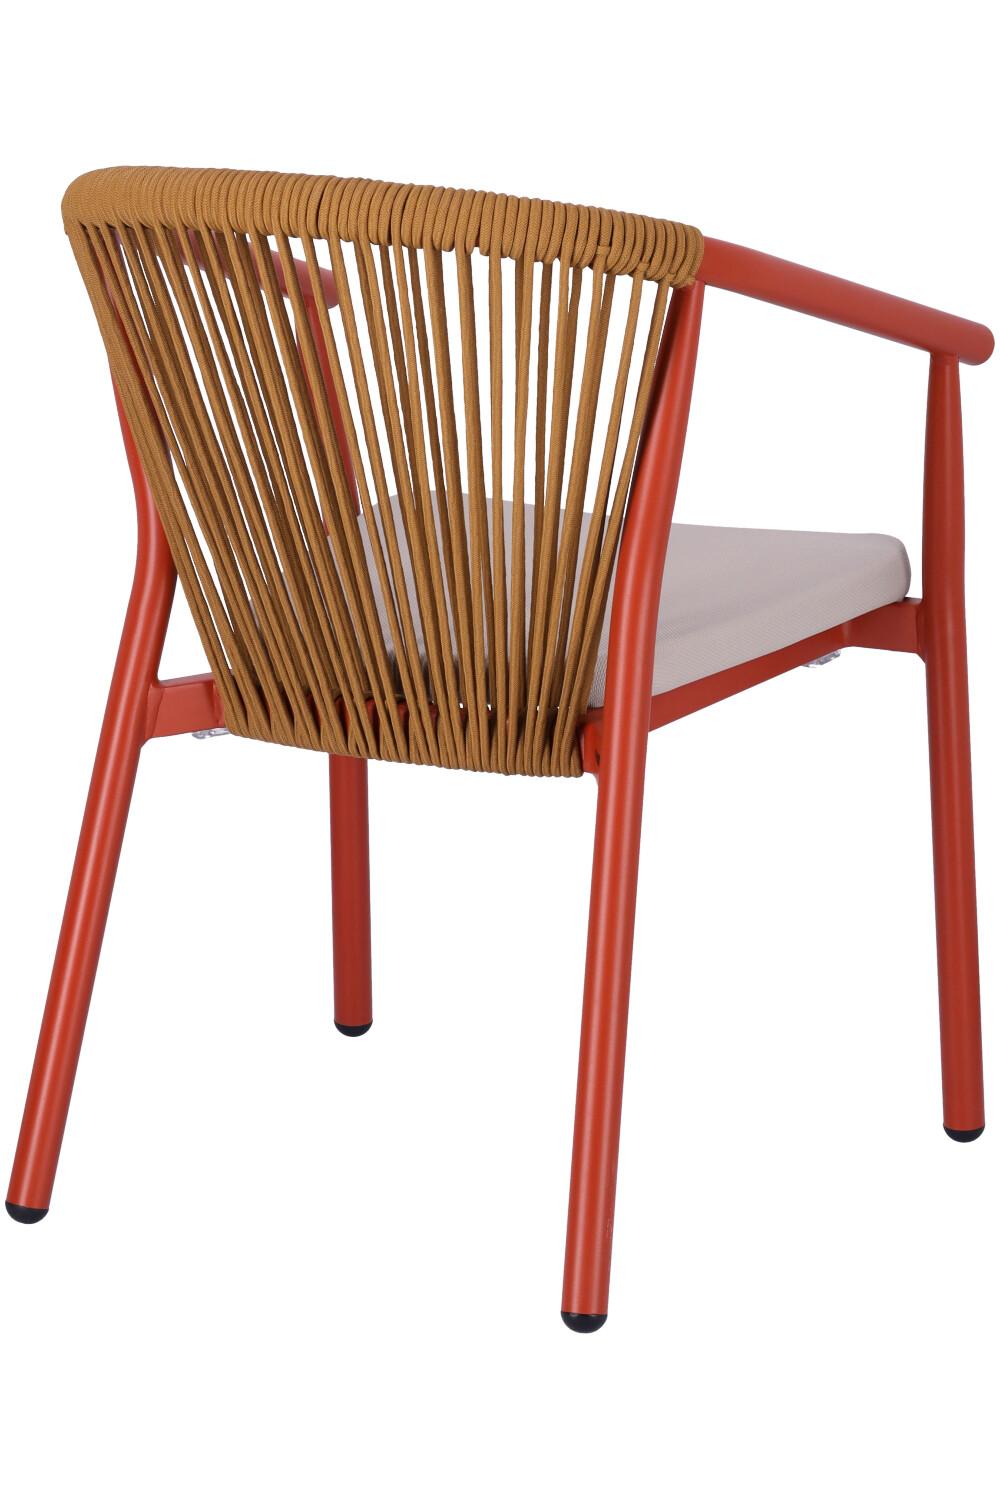 Abbildung arm chair Zaki Schrägansicht